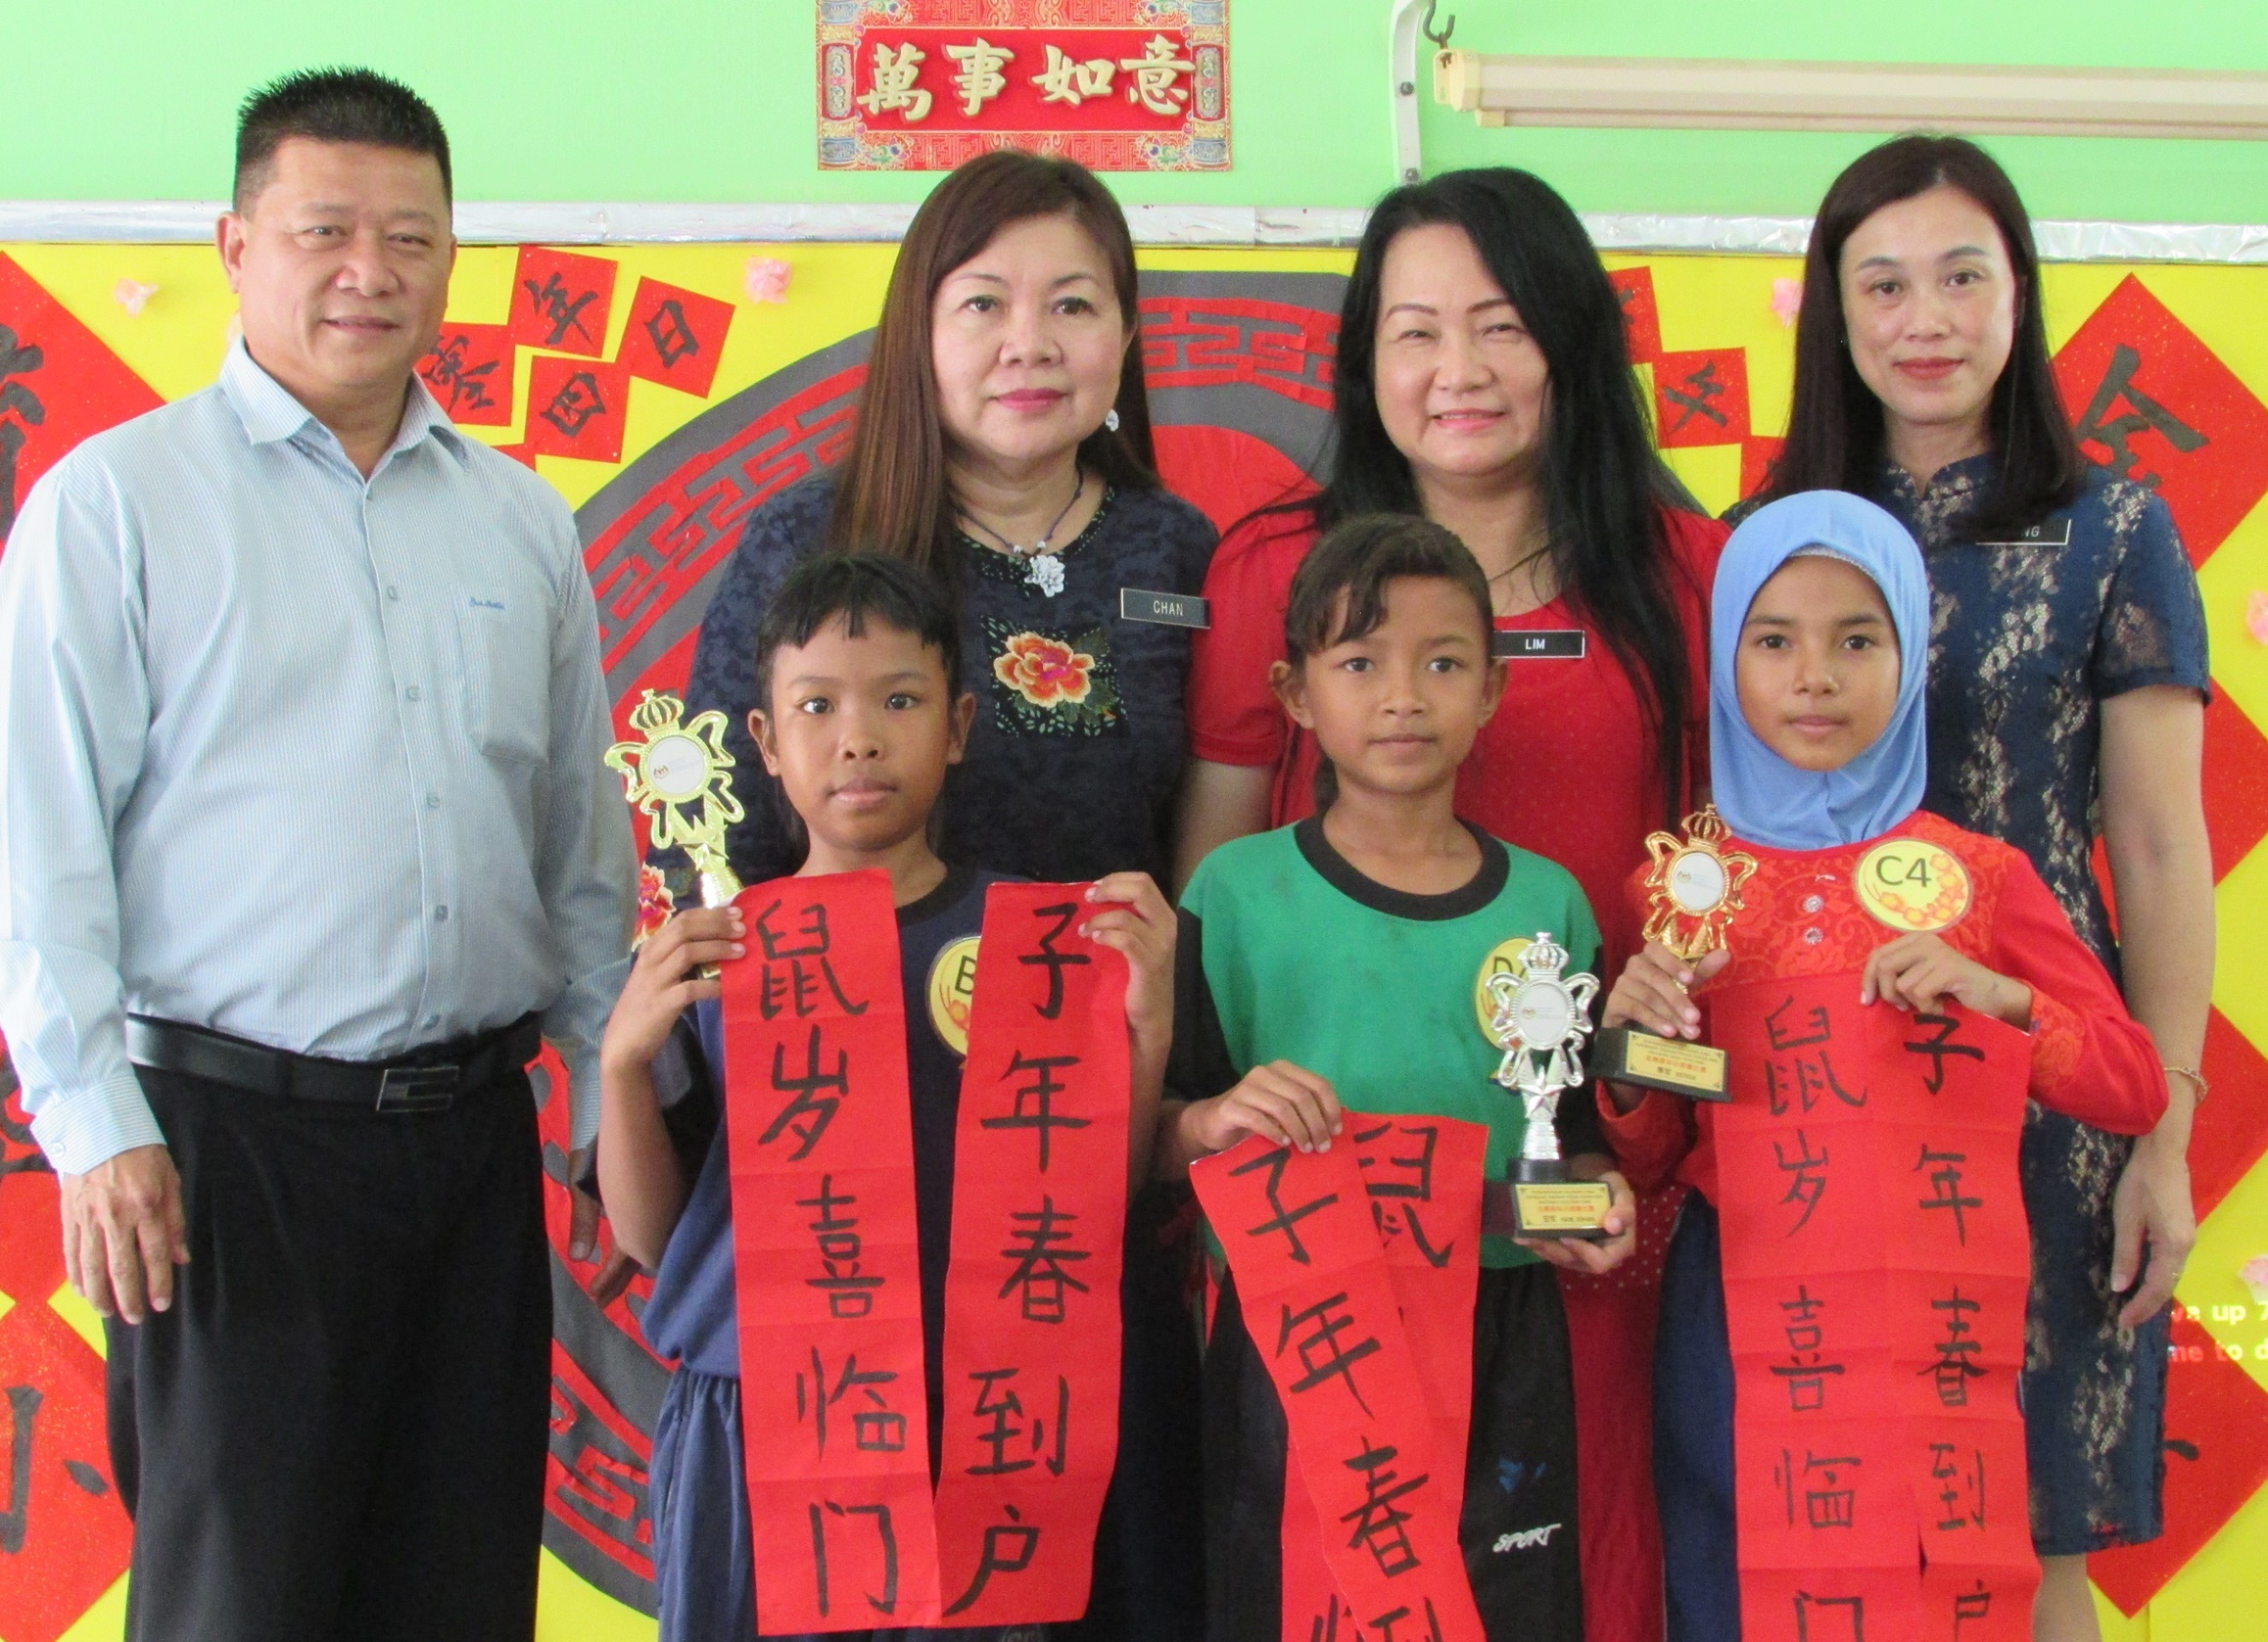 沈春祥(后左一起)、陈慧琦、林来贞及陈俐妦与挥春赛华小组得奖学生合照留念。